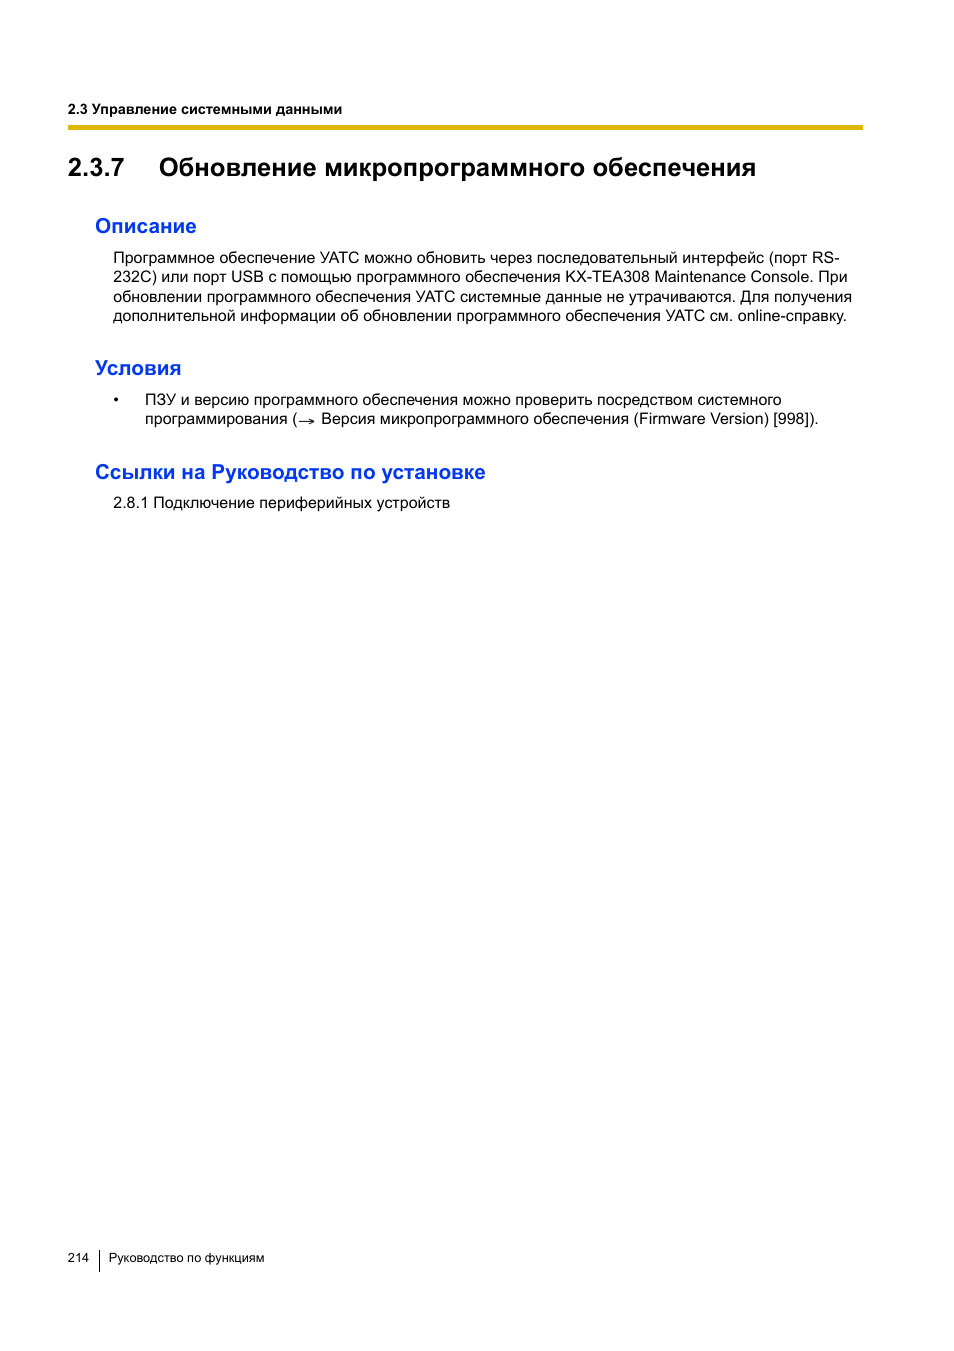 7 обновление микропрограммного обеспечения, 7 обновление микропрограммного обеспечения) | Инструкция по эксплуатации Panasonic KX-TEA308RU | Страница 214 / 318